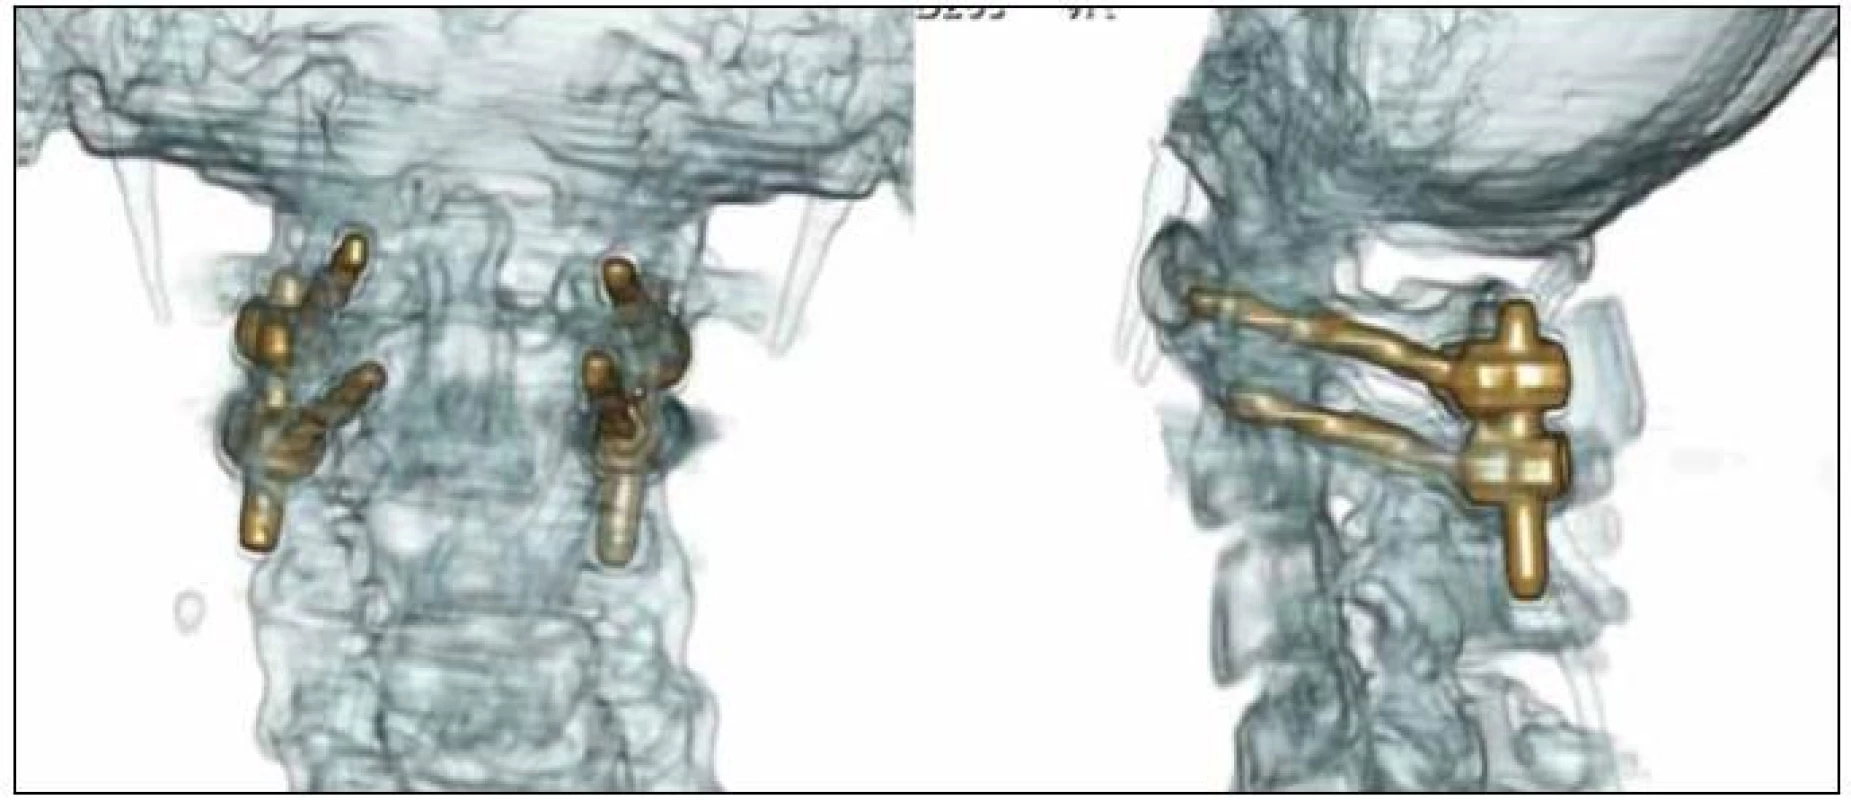 3D CT rekonstrukce po stabilizaci C1/C2 technikou polyaxiálních šroubů a tyčí dle Harmse et al s naložením kostního štěpu mezi oblouky C1/C2, pooperační kontrola.